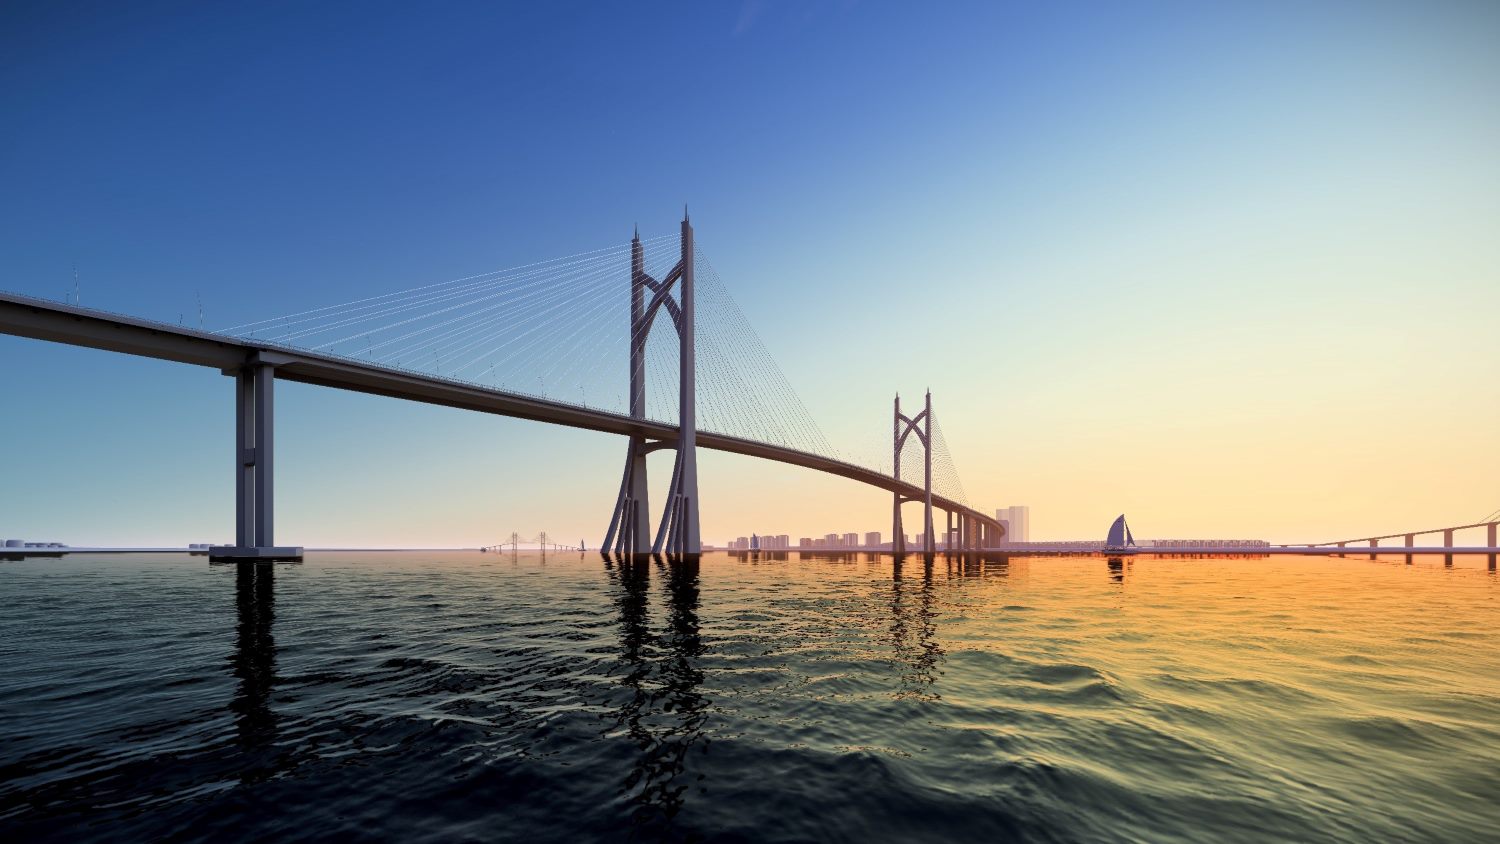 Cầu Cần Giờ khi hoàn thành năm 2028 sẽ trở thành cầu lớn nhất TPHCM.  Ảnh: Sở GTVT TPHCM